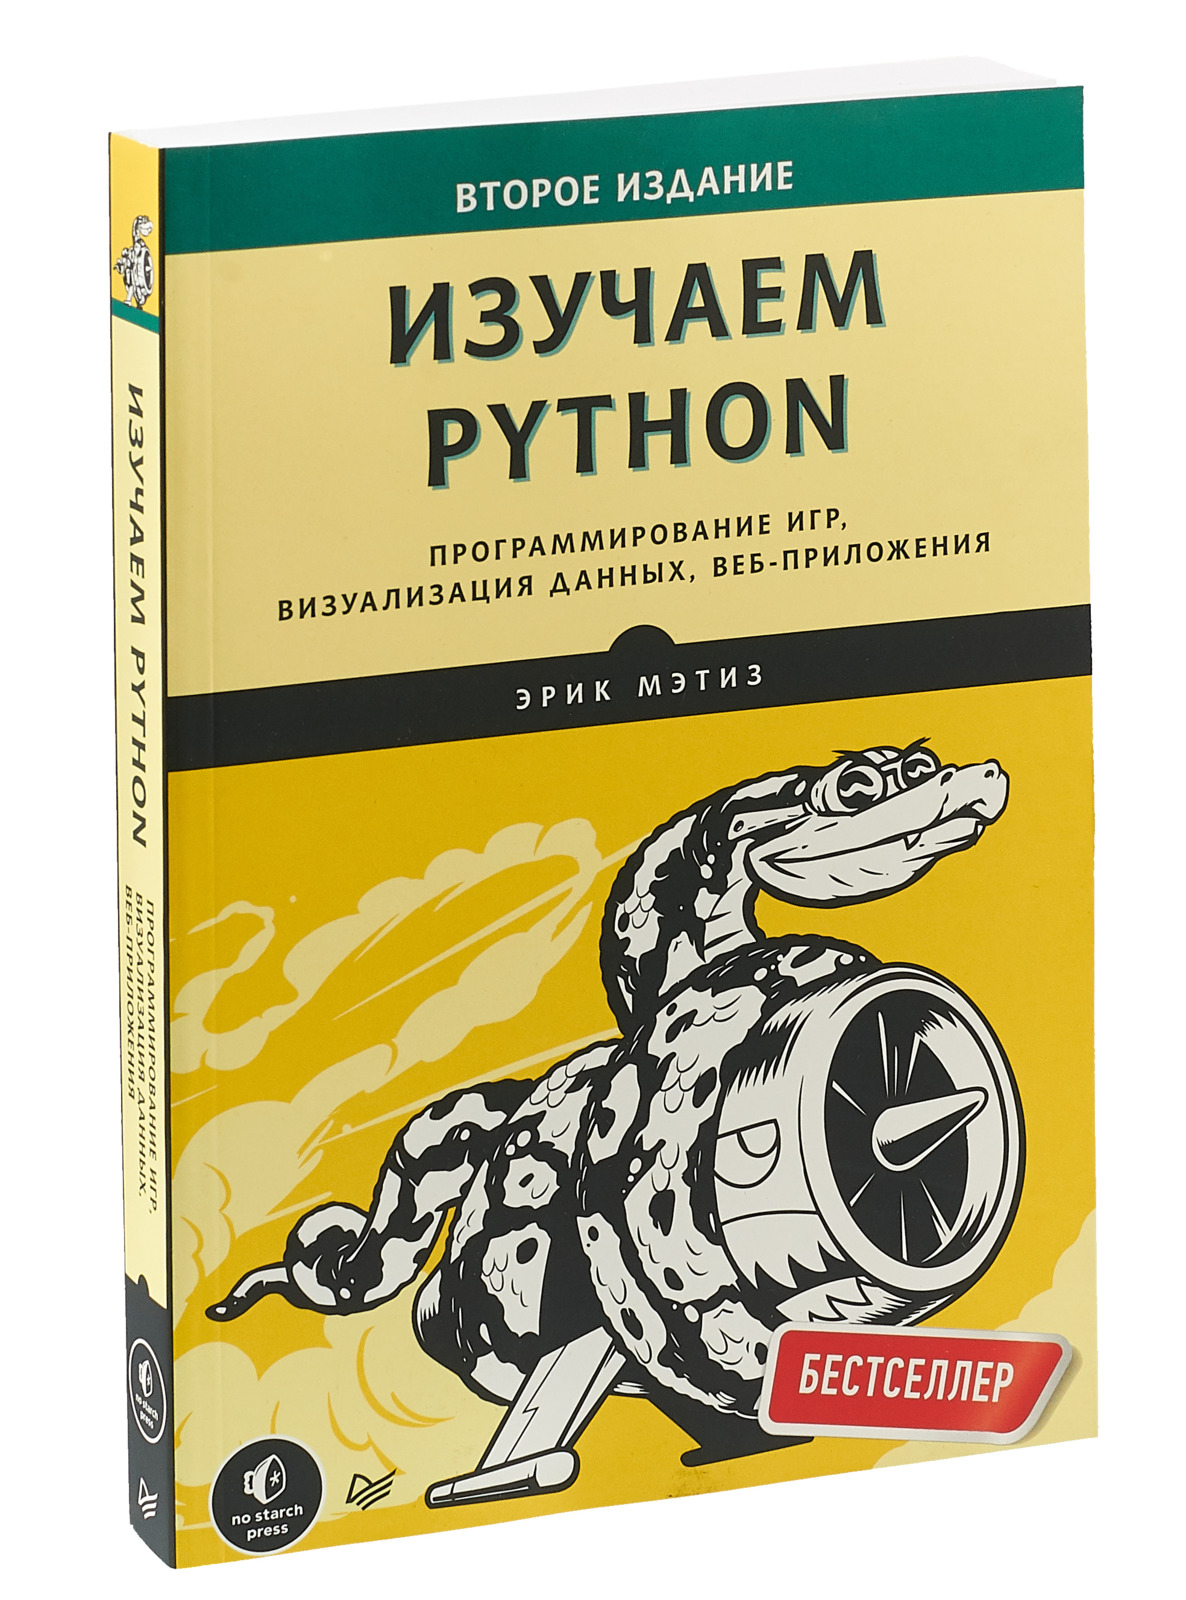 Python том 1. Питон книга по программированию изучаем питон. Книги о веб-программировании.